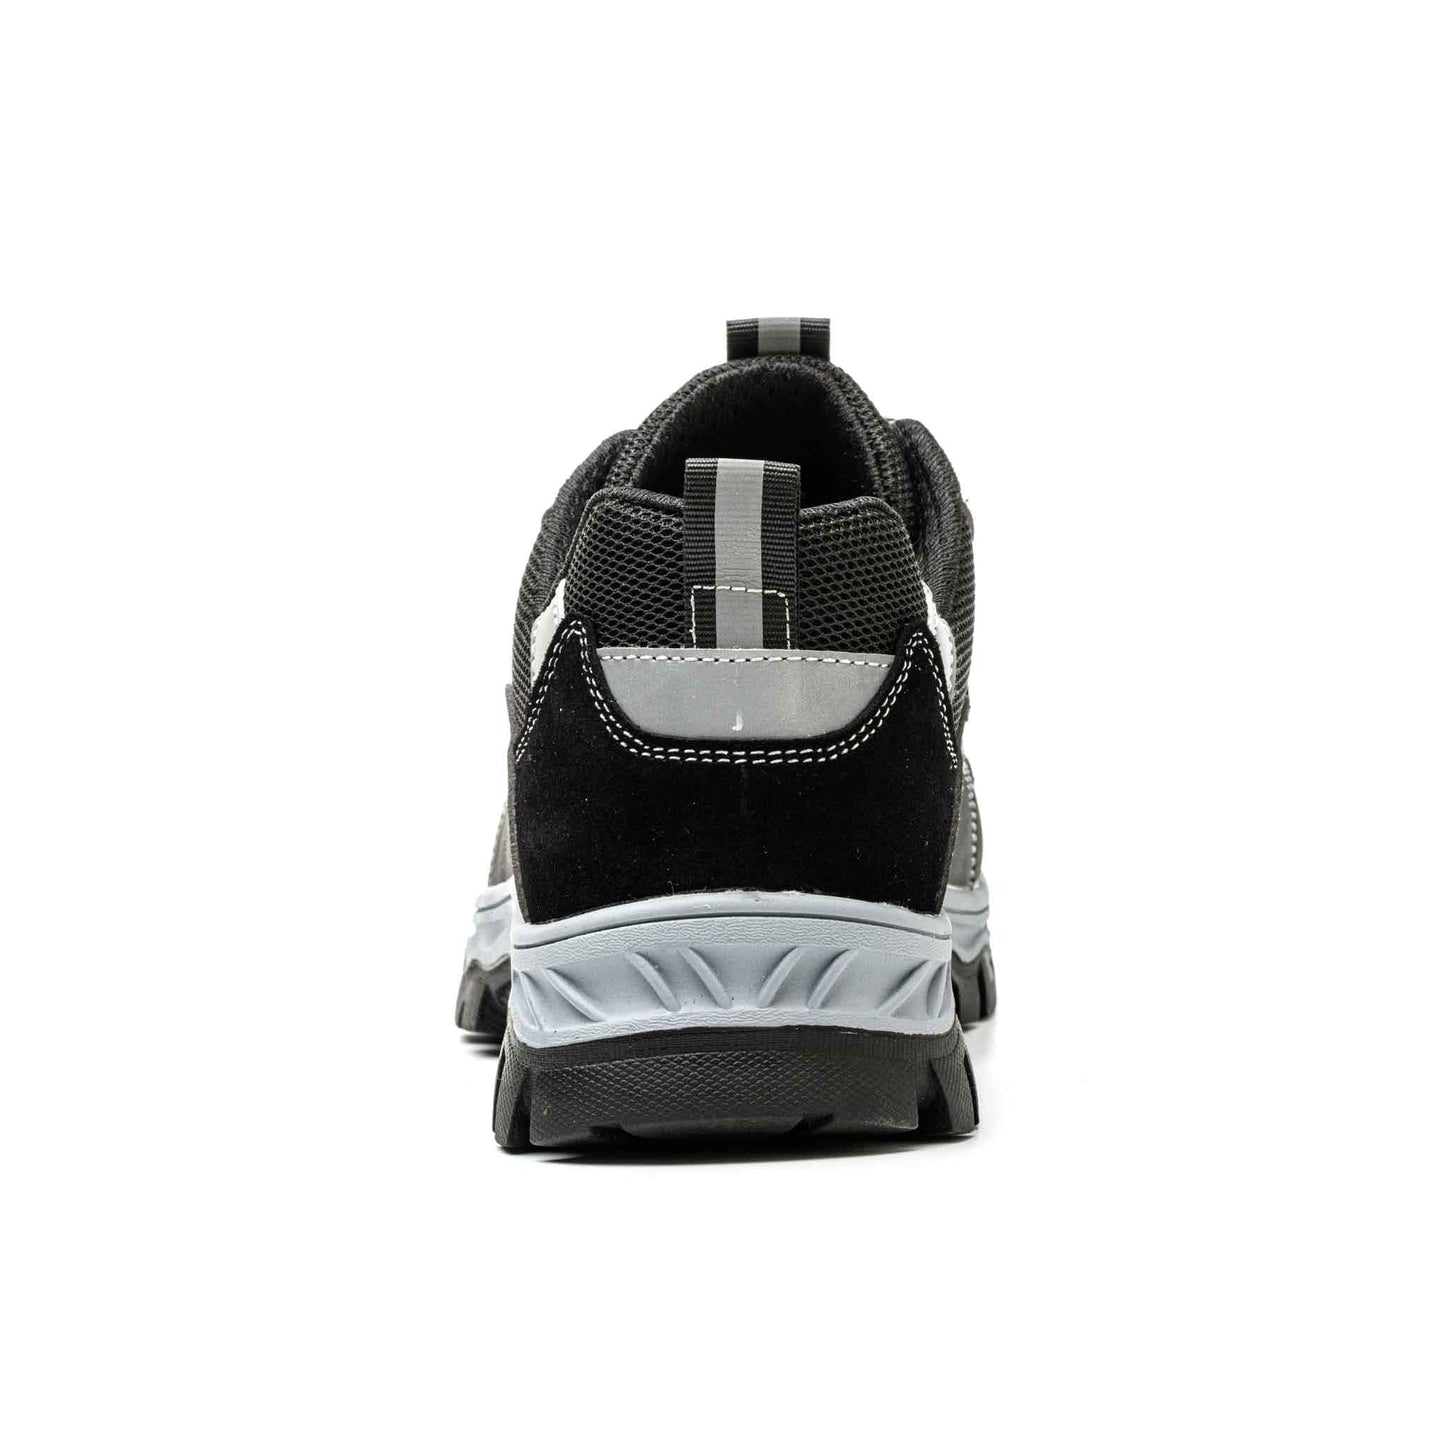 Ironfeet Orion- Chaussures de sécurité légères en cuir et daim